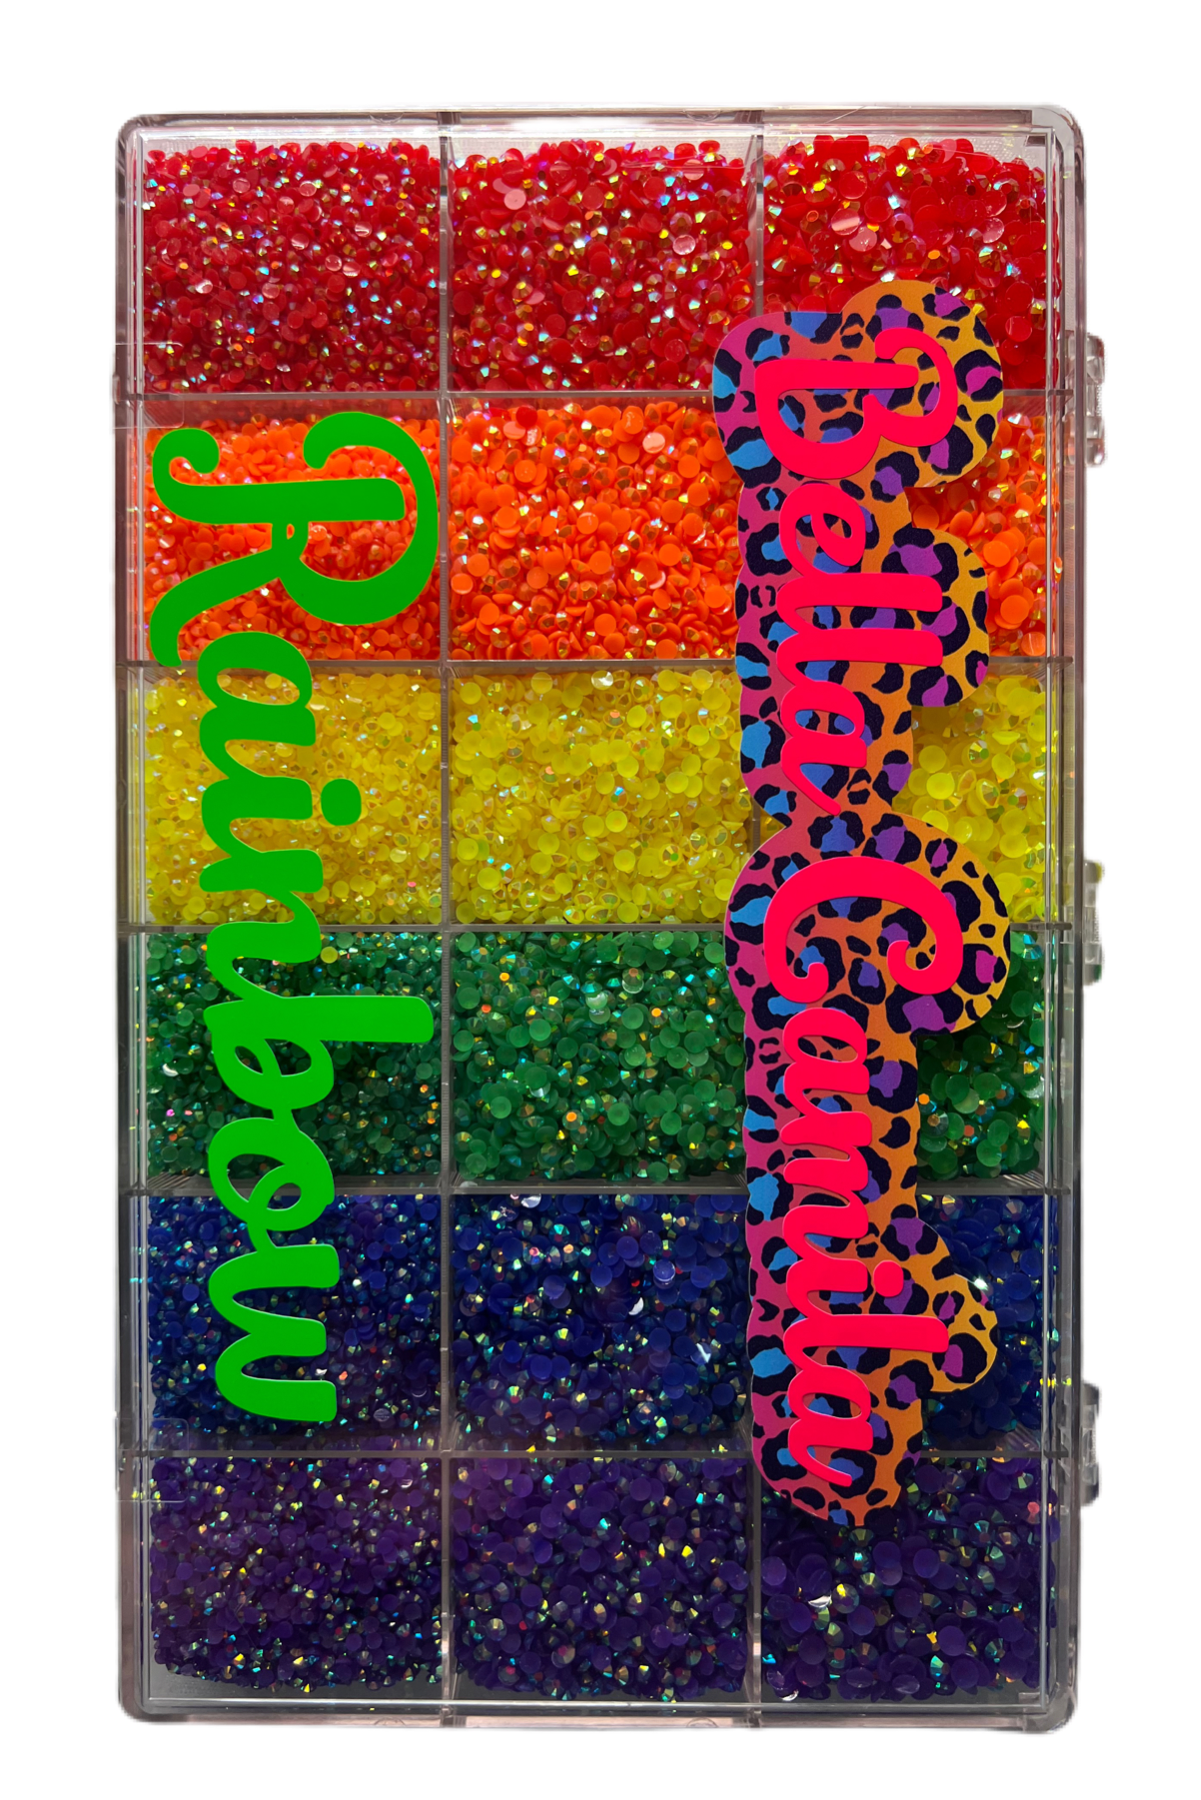 Rainbow Large Kit